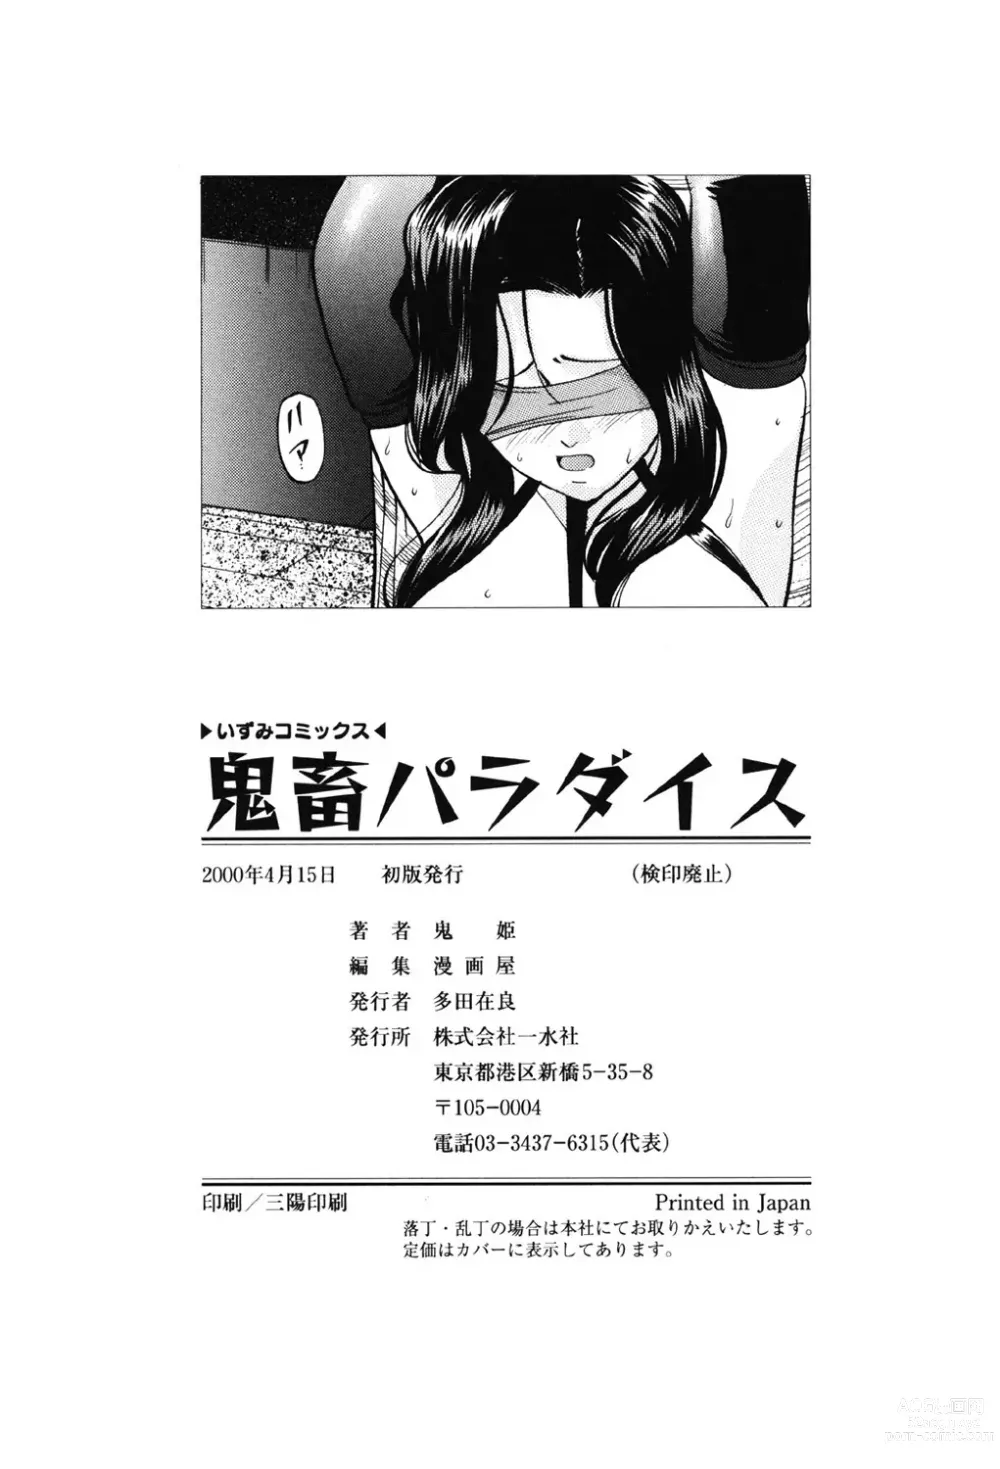 Page 149 of manga Kichiku Paradise - The Cruel Person Paradise